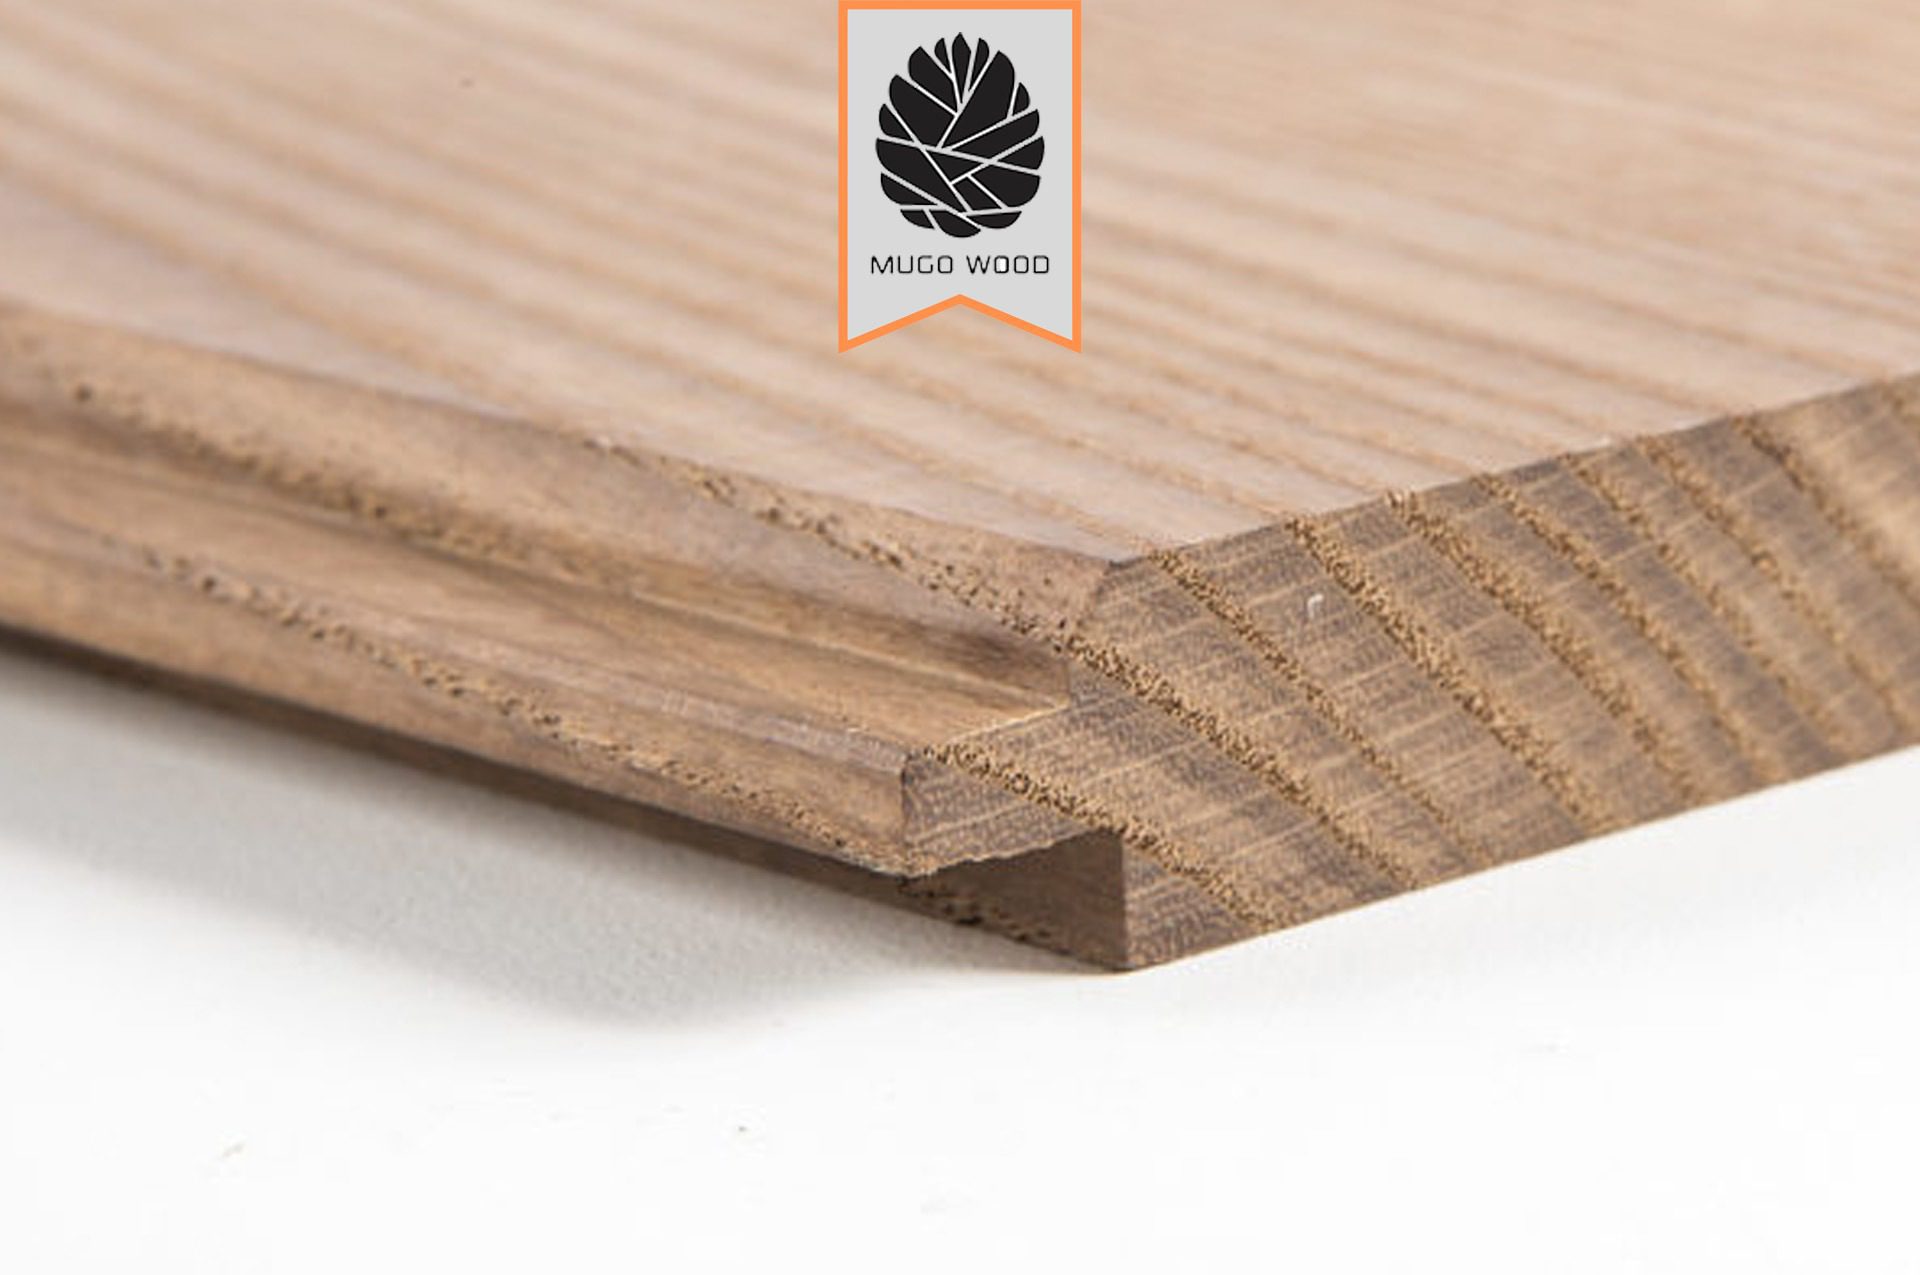 ابعاد چوب ترموود | موگو وود | ترموود | چوب ترموود | رنگ ترموود | قیمت چوب ترموود